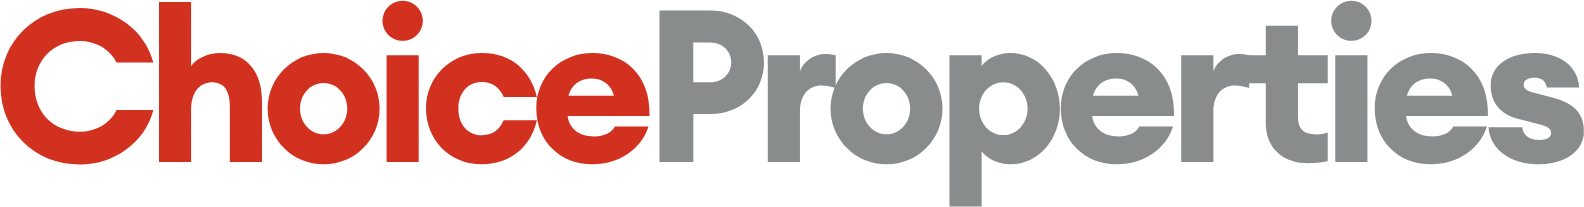 Choice Properties REIT logo large (transparent PNG)